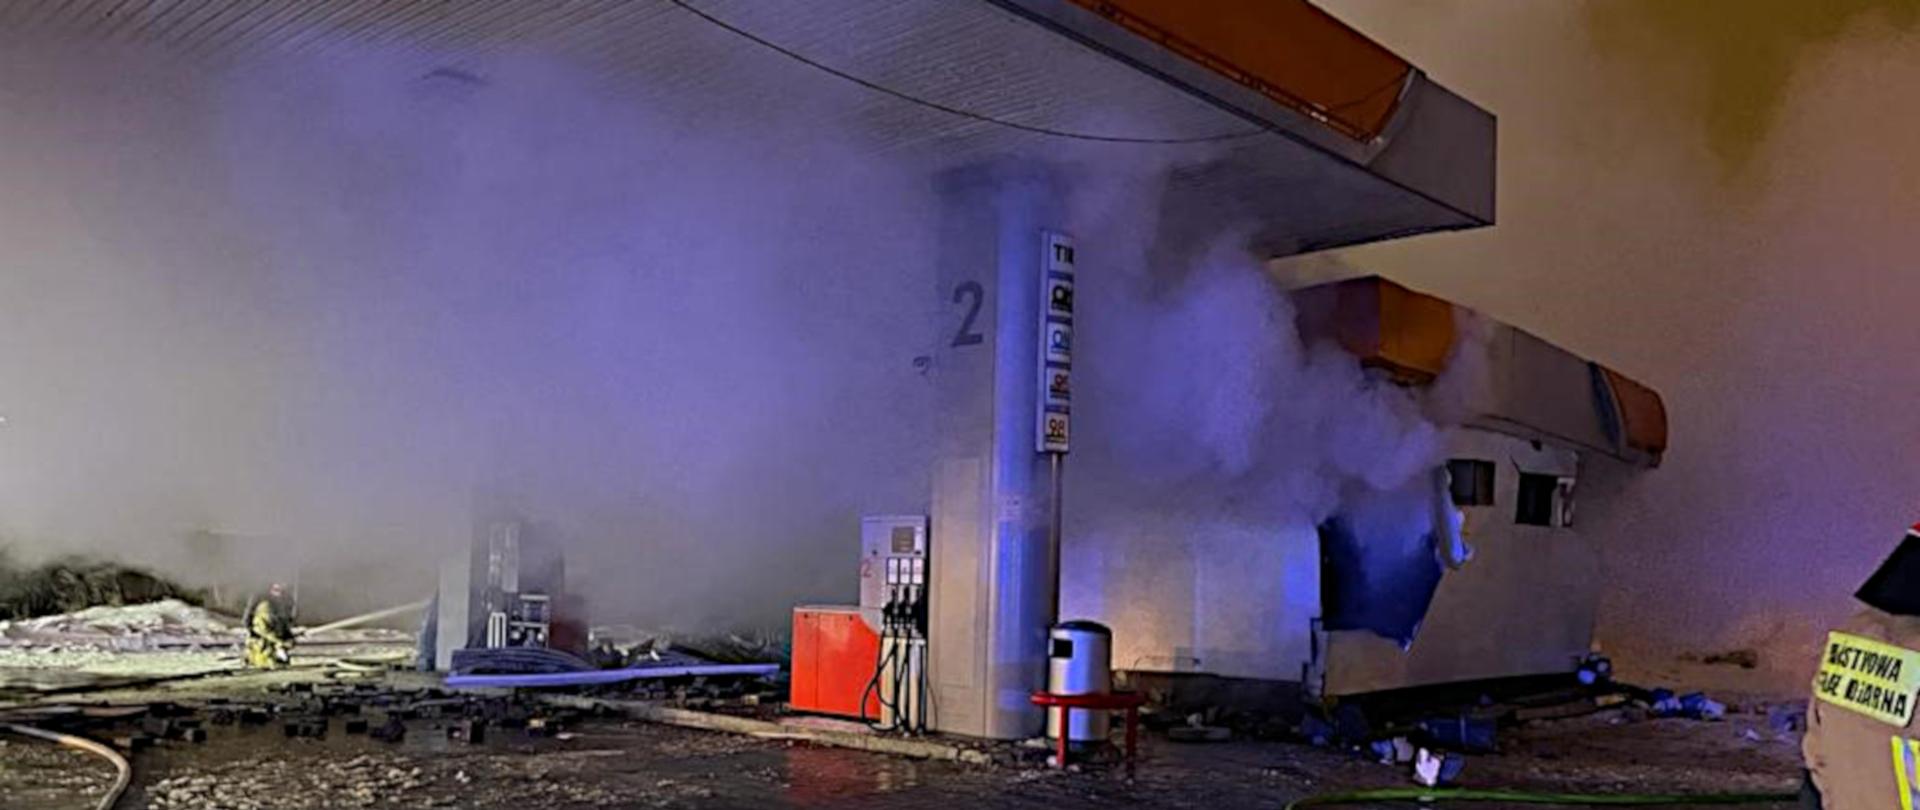 Zdjęcie przedstawia stację benzynową i widoczne uszkodzenia budynku na skutek wybuchu. W tle widoczny strażaka w ubrani specjalnym i hełmie, gaszący pożar z prądownicy.